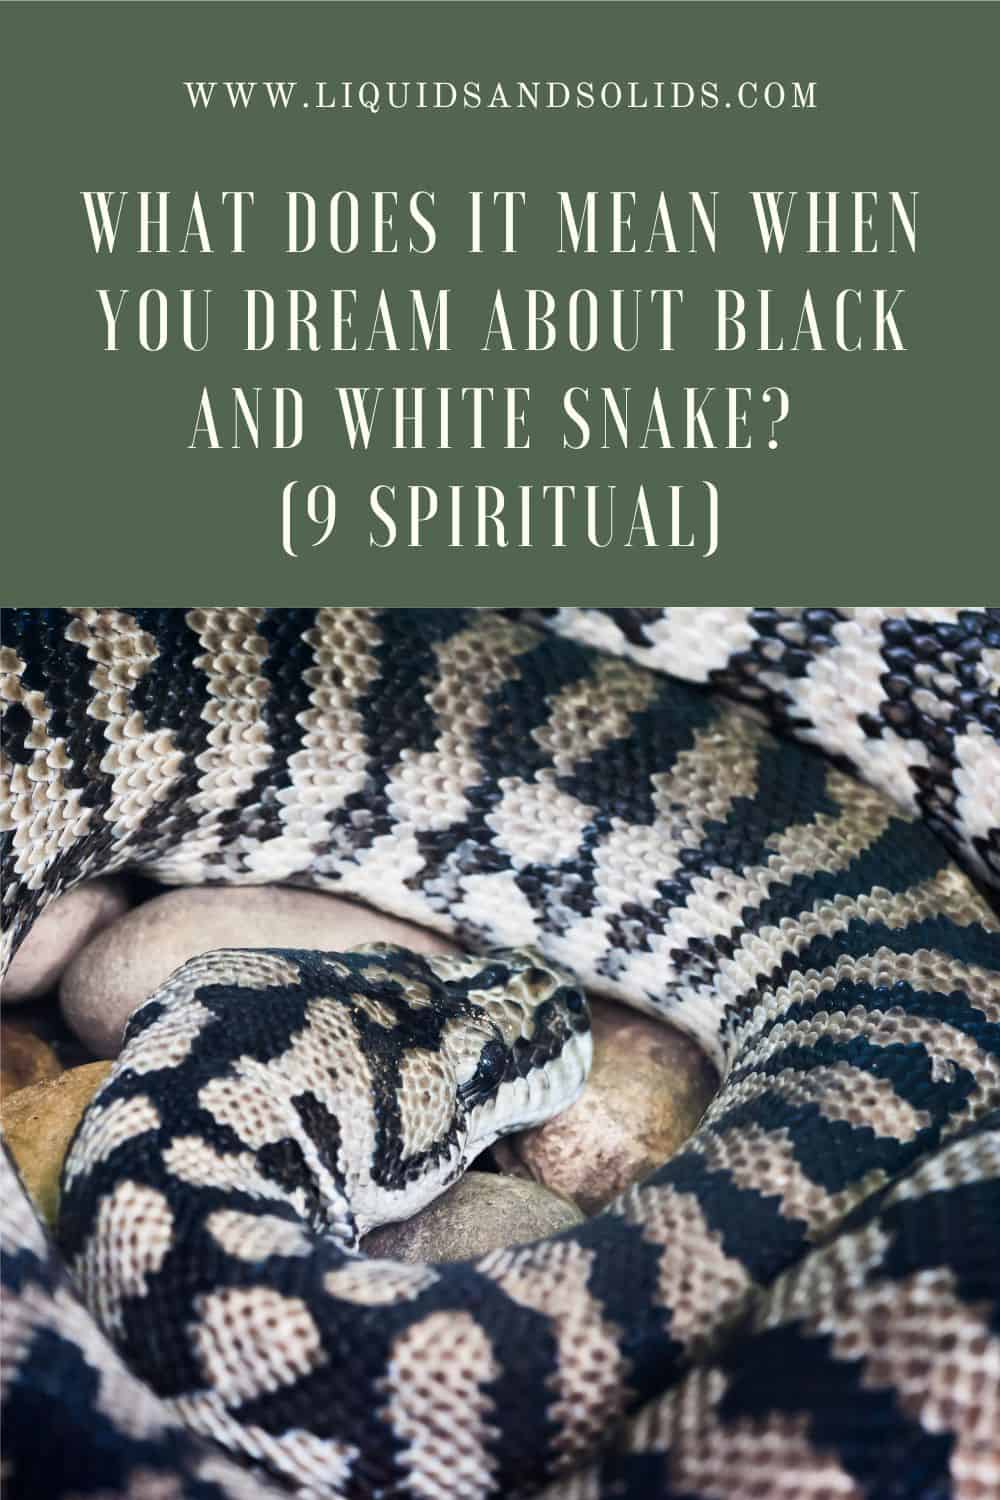  Álom a fekete és fehér kígyóról? (9 spirituális jelentés)